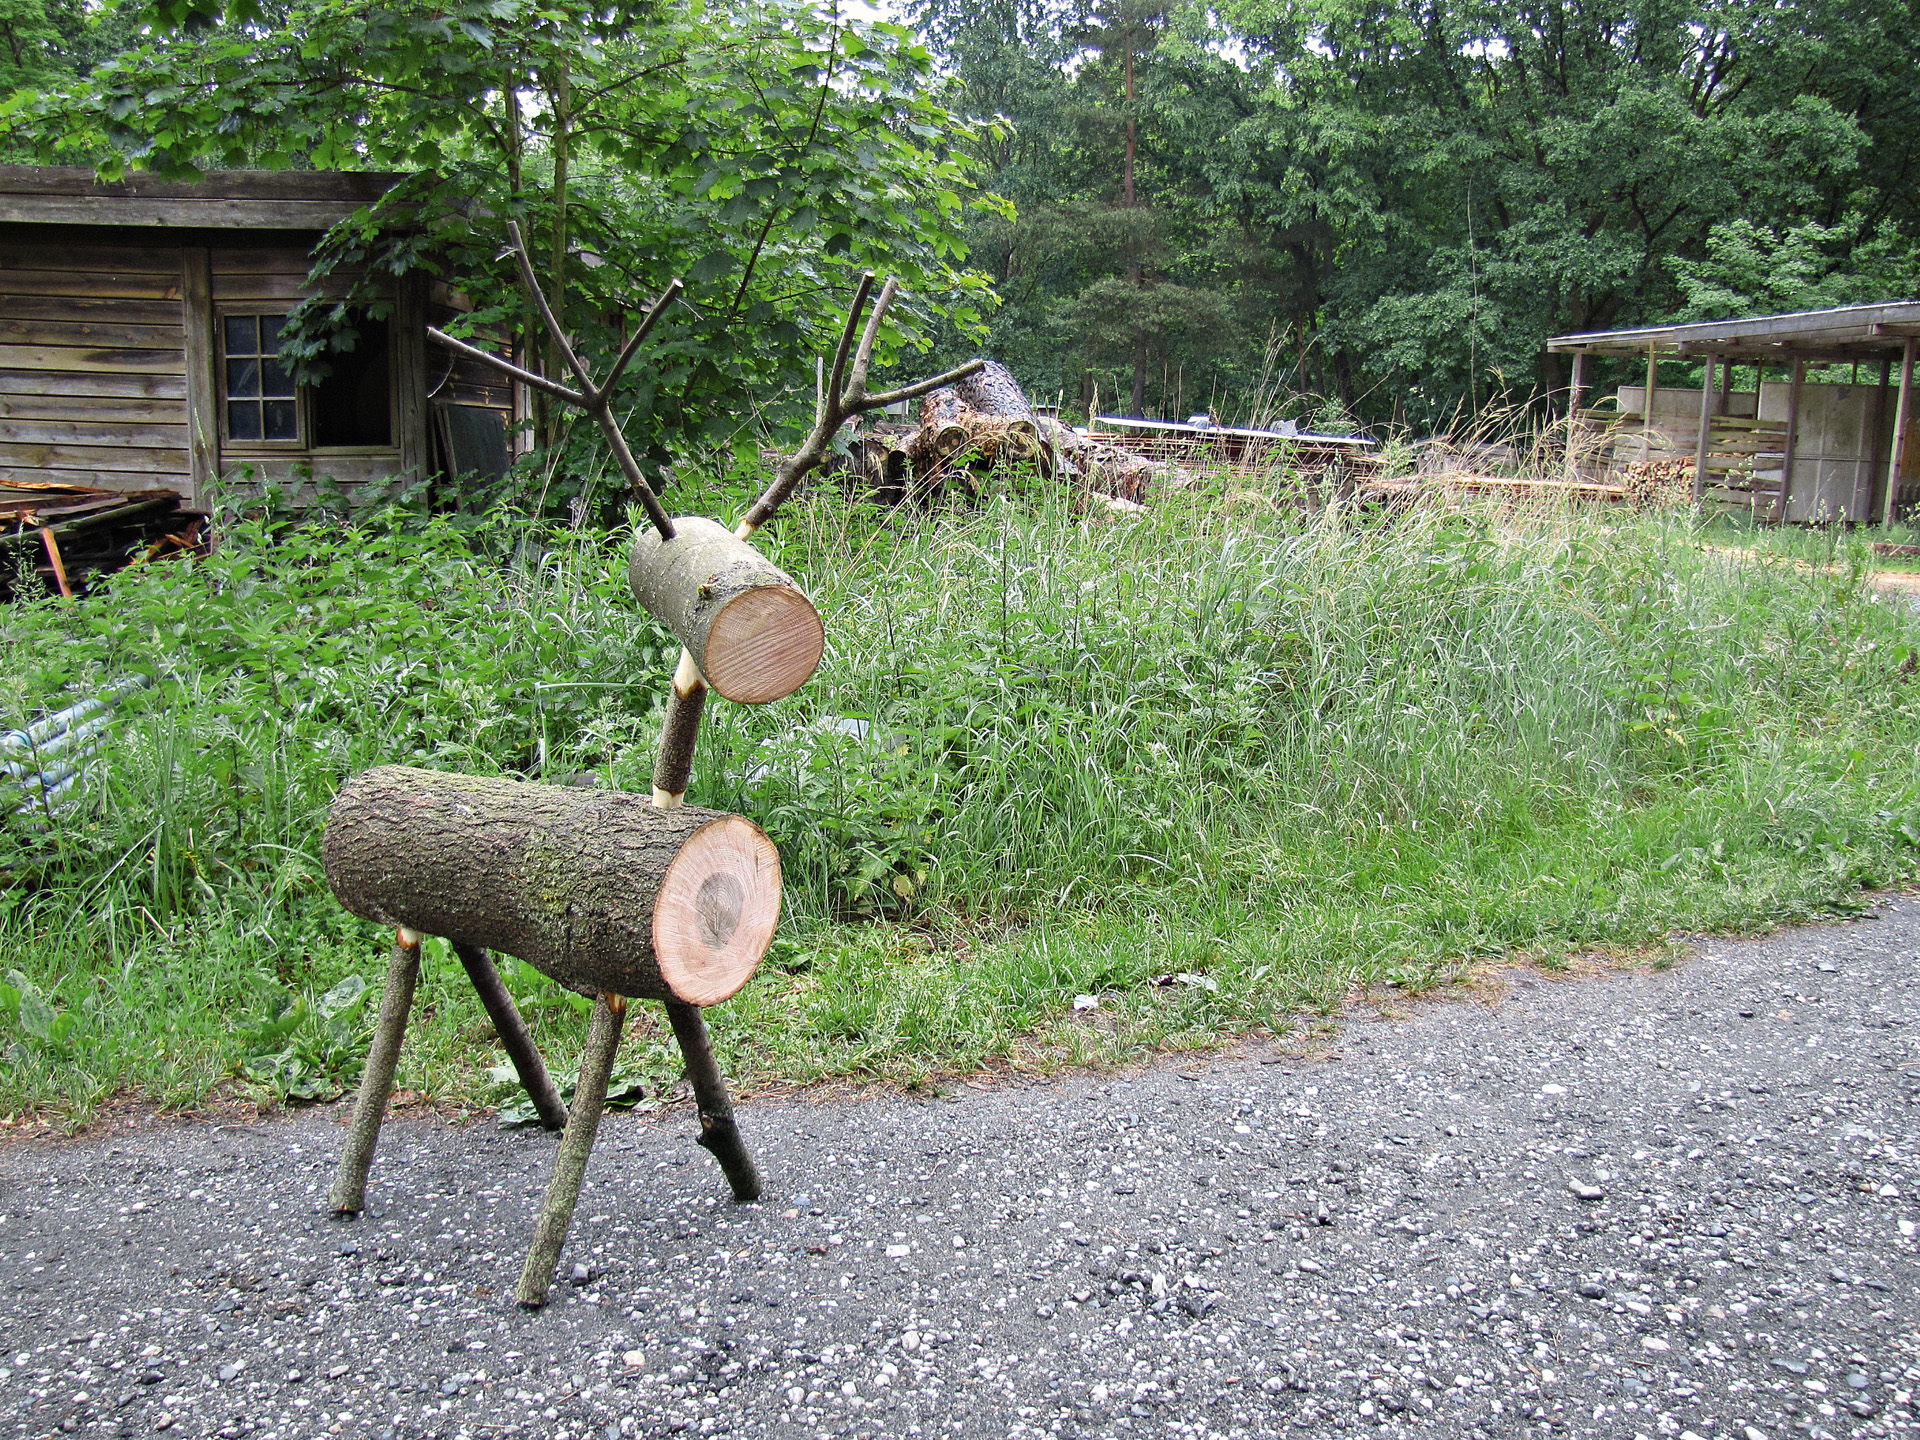 Rena de toro de bricolage em frente a relva verde e a um abrigo – exemplo de construção de rena de madeira